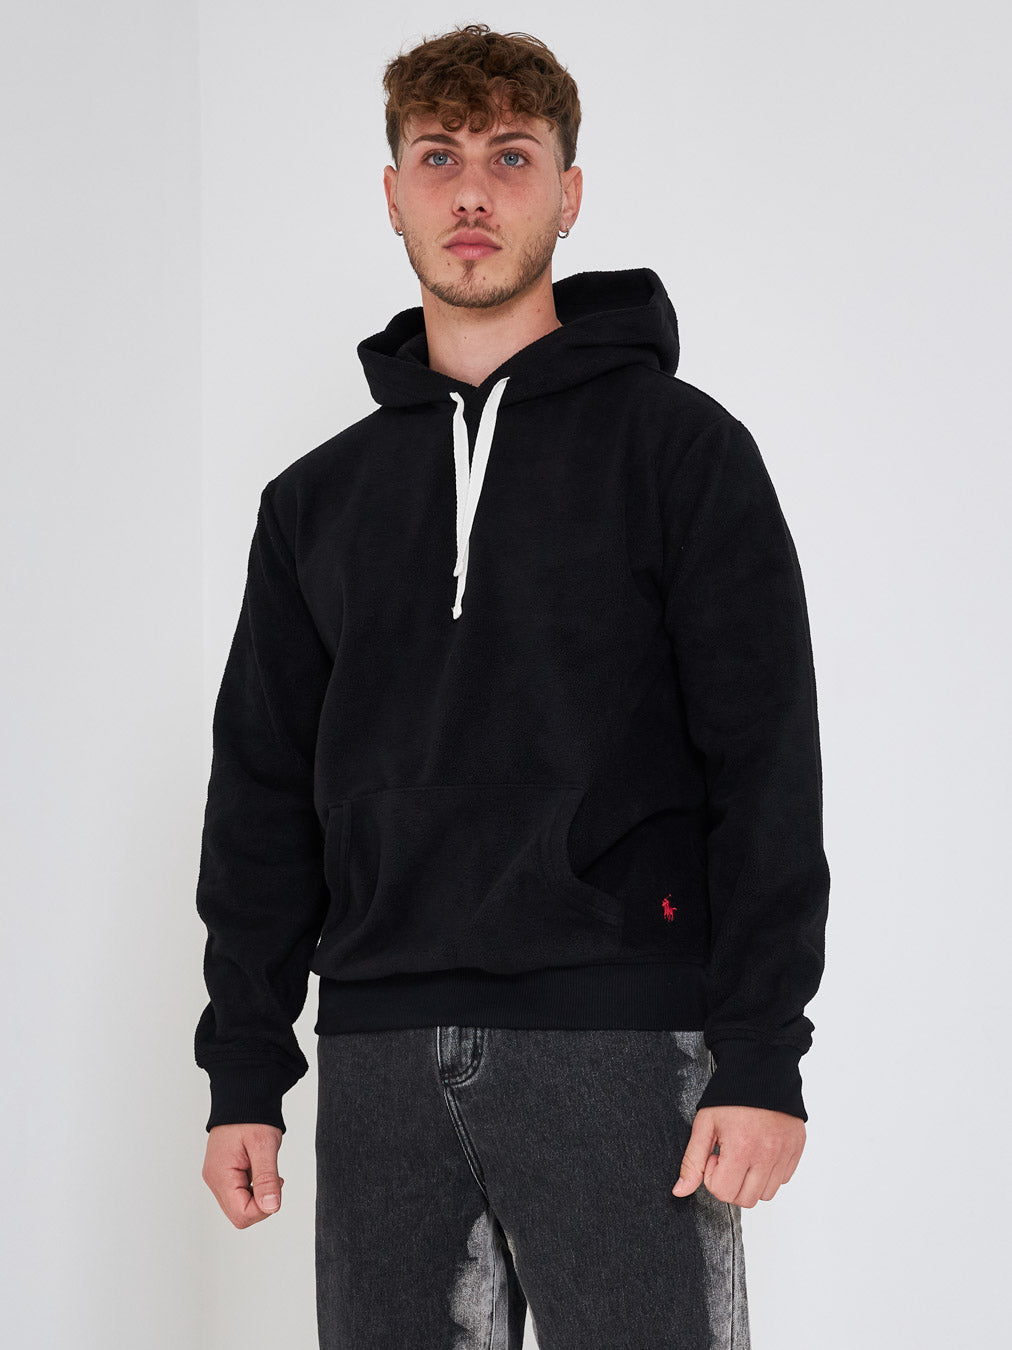 Ralph Lauren black hooded sweatshirt